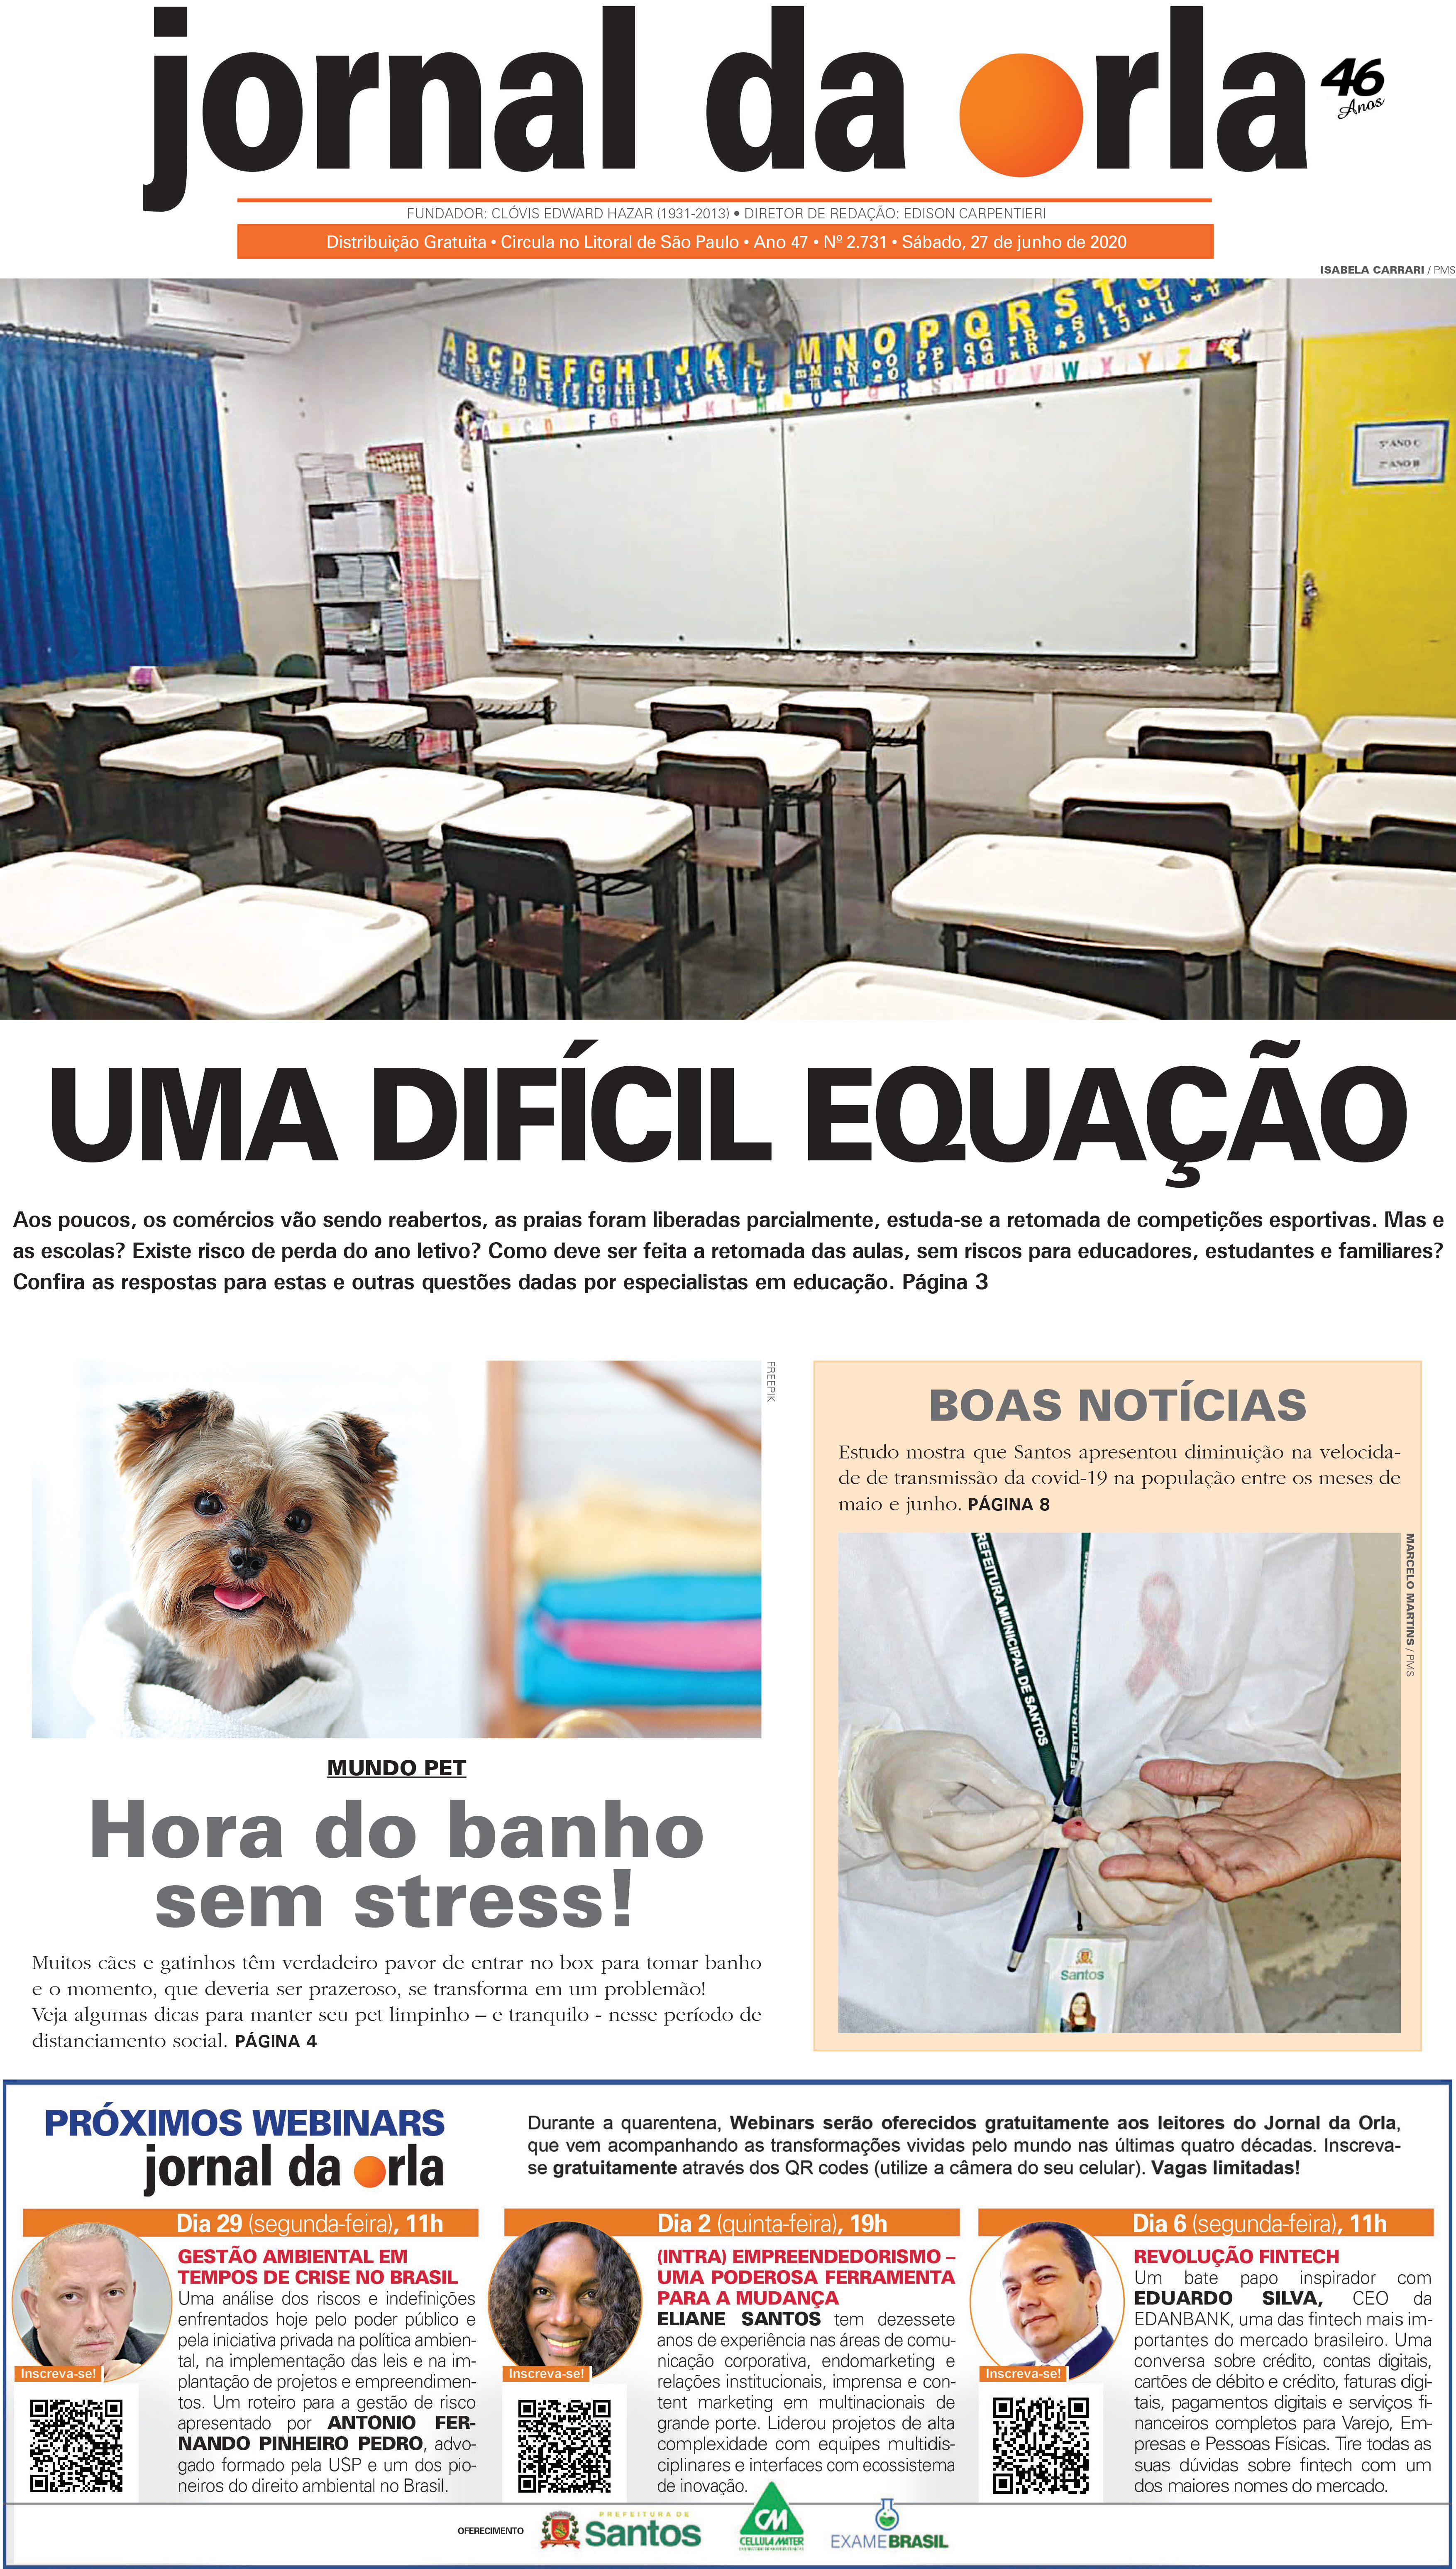 27/06/2020 | Jornal da Orla